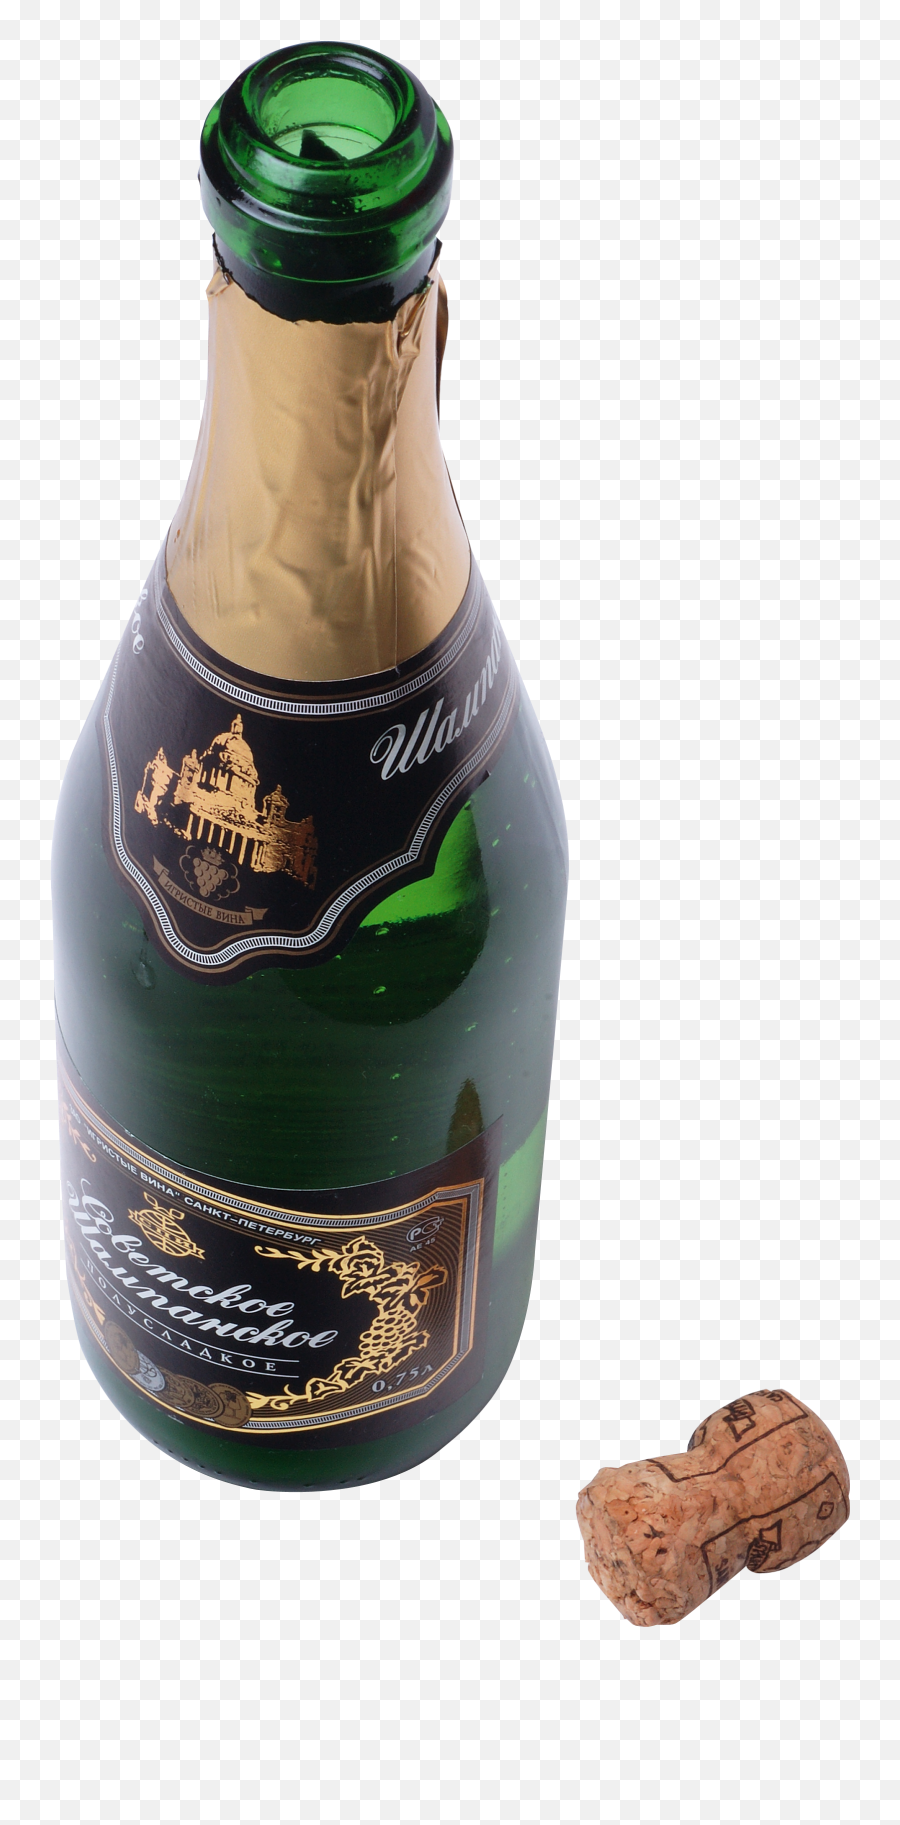 Champagne Png Transparent Image - Beer Bottle Png For Picsart Emoji,Champagne Bottle Clipart